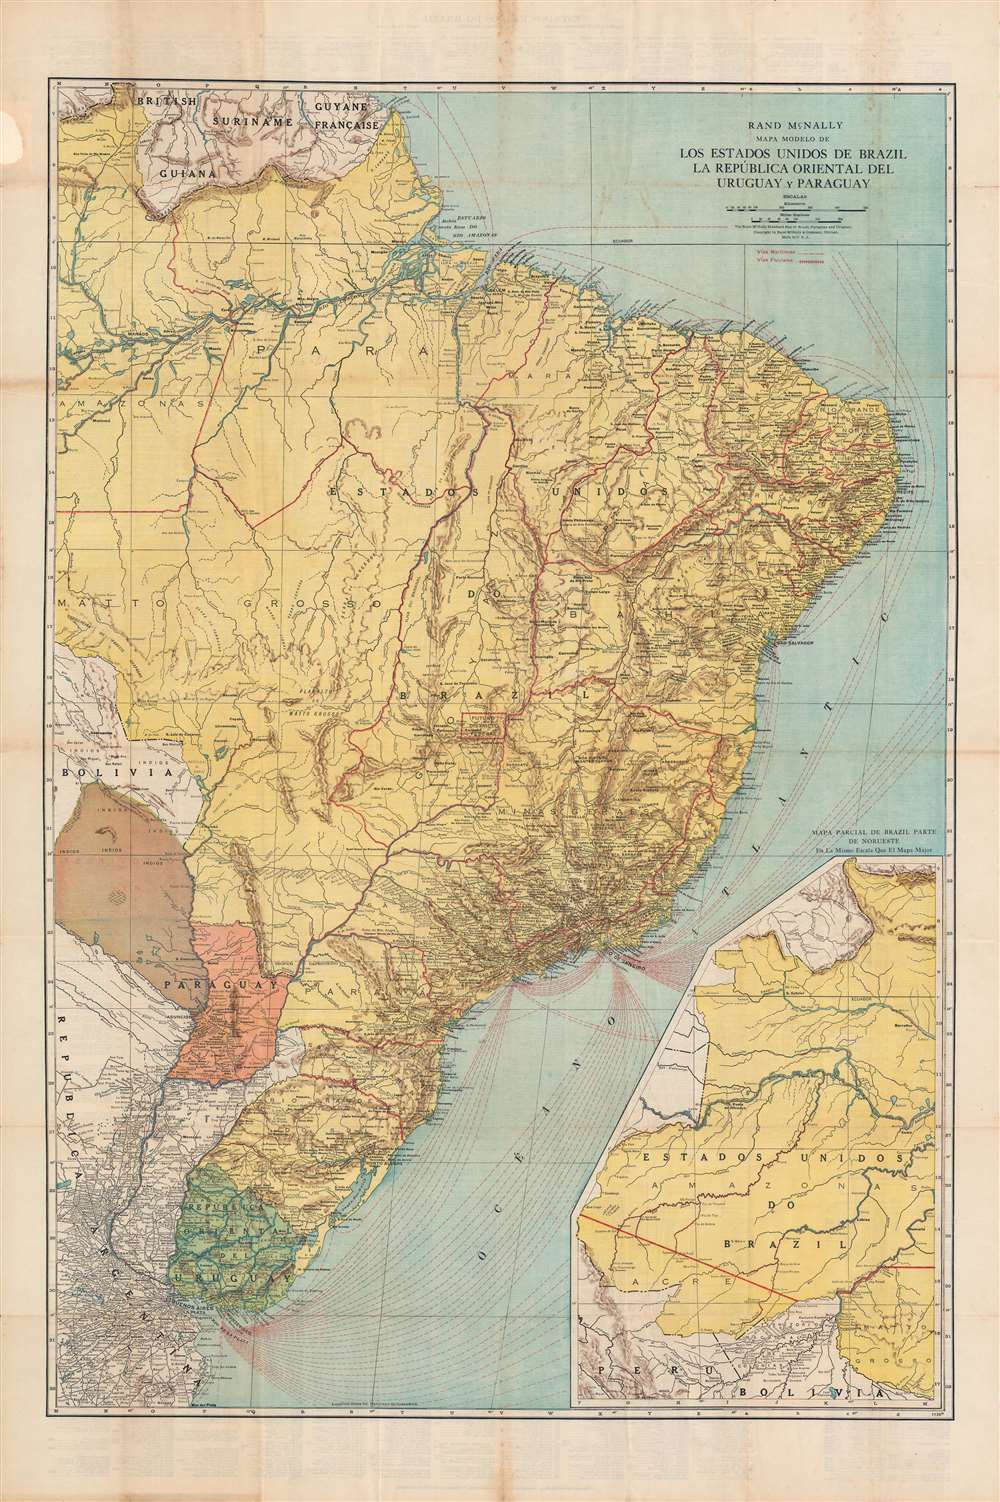 Mapa modelo de los Estados Unidos de Brazil, La República Oriental del Uruguay y Paraguay. - Main View